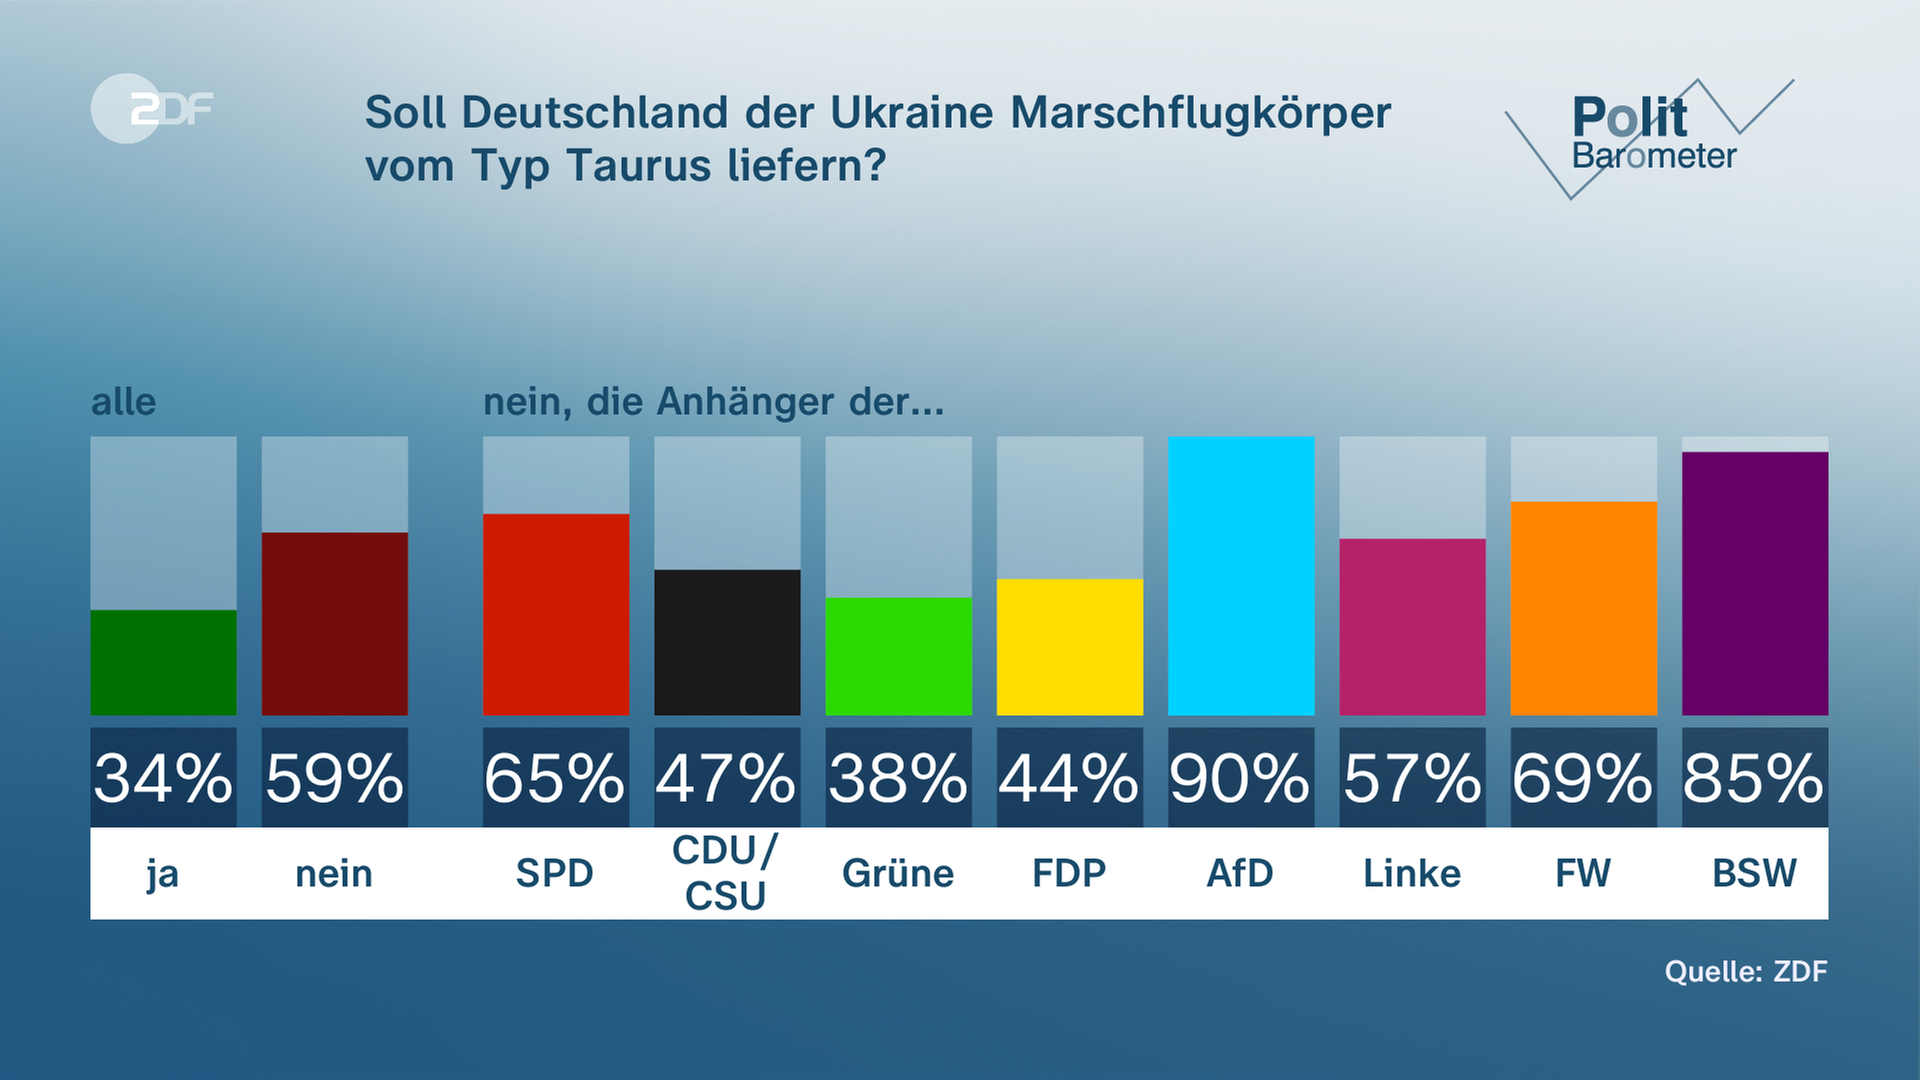 Politbarometer: Eine Mehrheit ist gegen die Lieferung von Taurus-Marschflugkörpern an die Ukraine (59 Prozent).